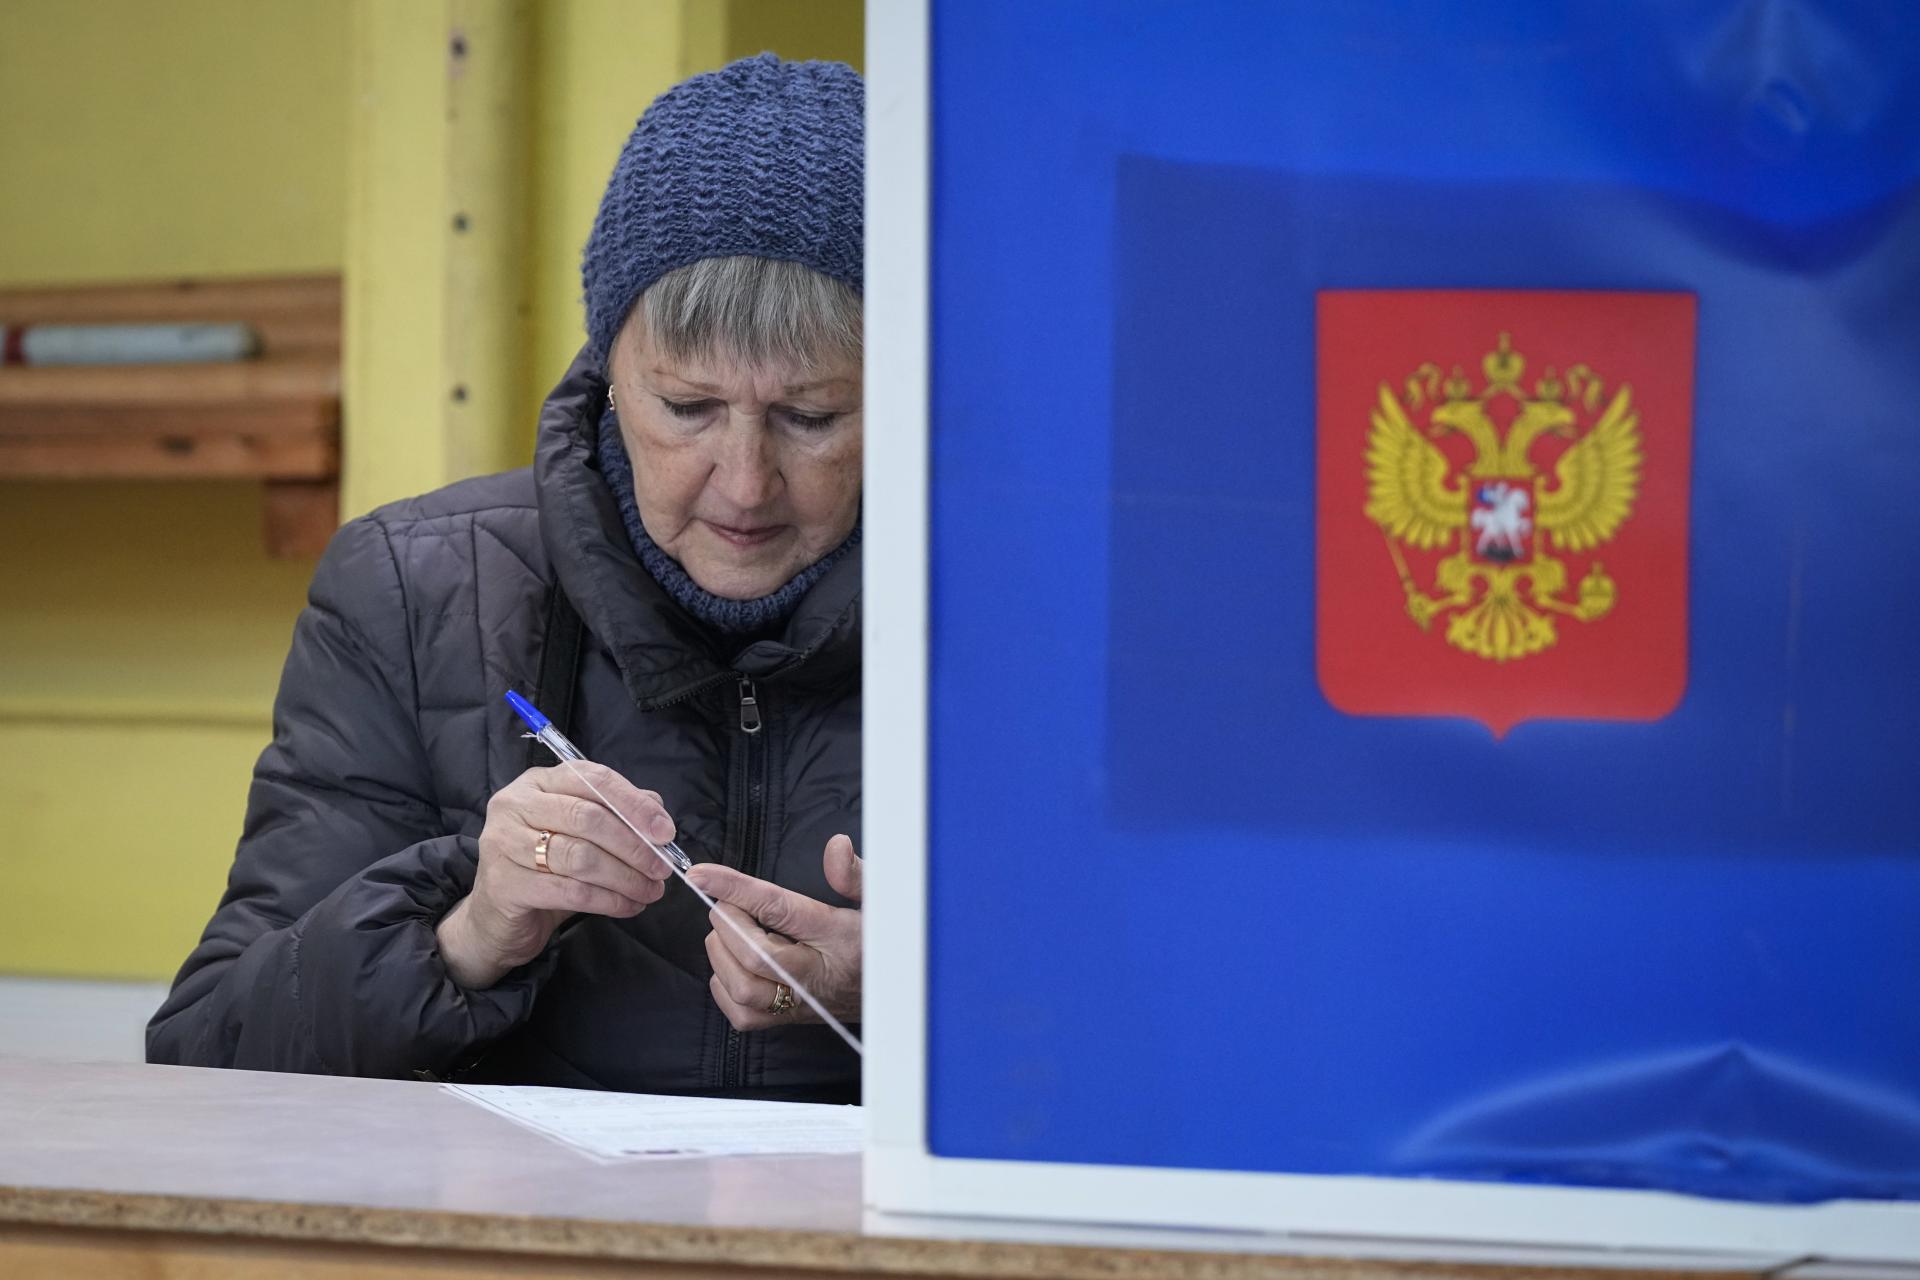 Prezidentské voľby sú najmenej transparentné v ruskej histórii, tvrdí hnutie Golos